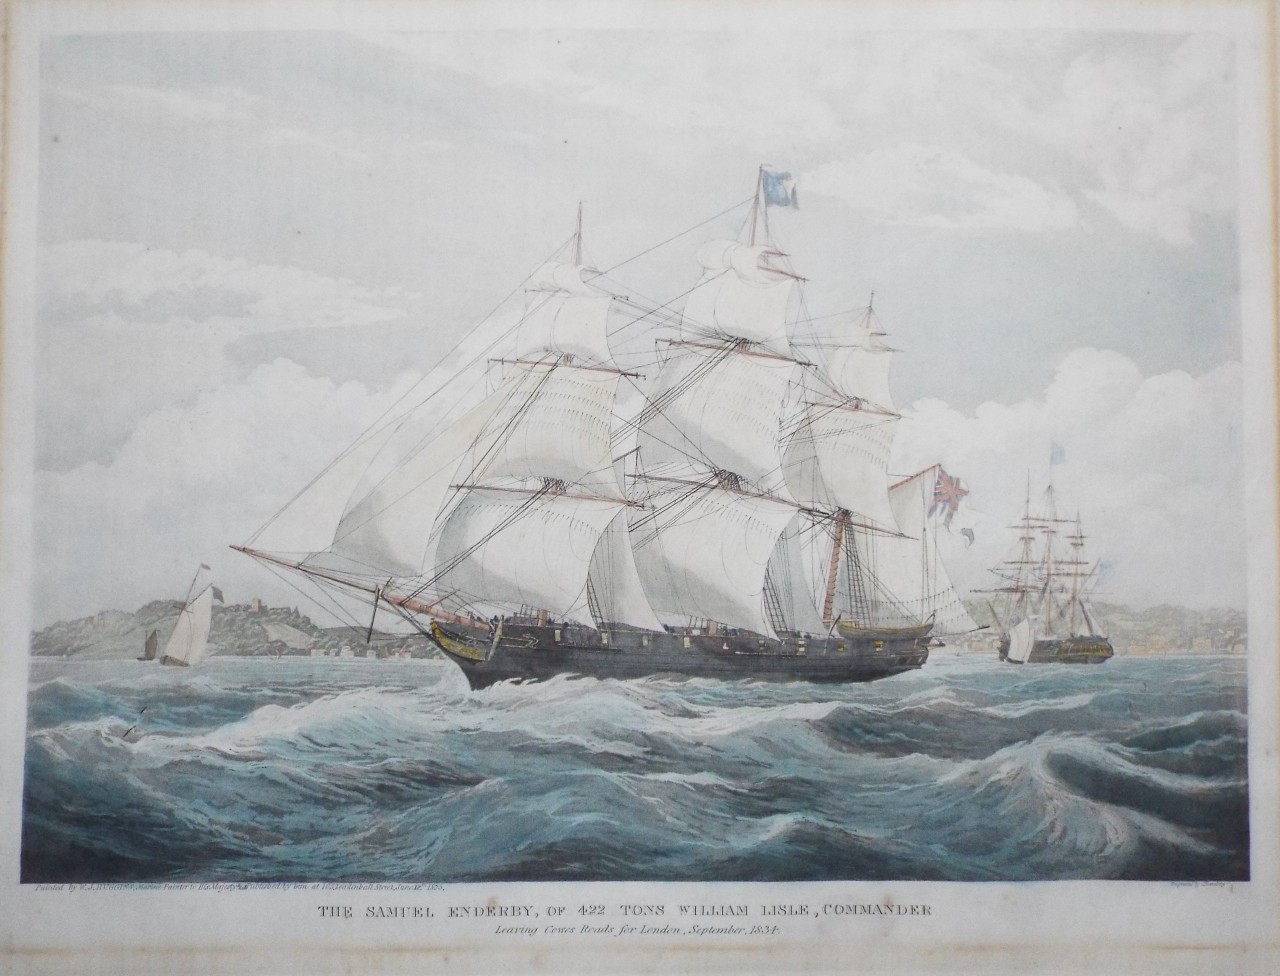 Aquatint - The Samuel Enderby, of 422 Tons William Lisle, Commander. Leaving Cowes Roads for London, September, 1834. - Rosenberg